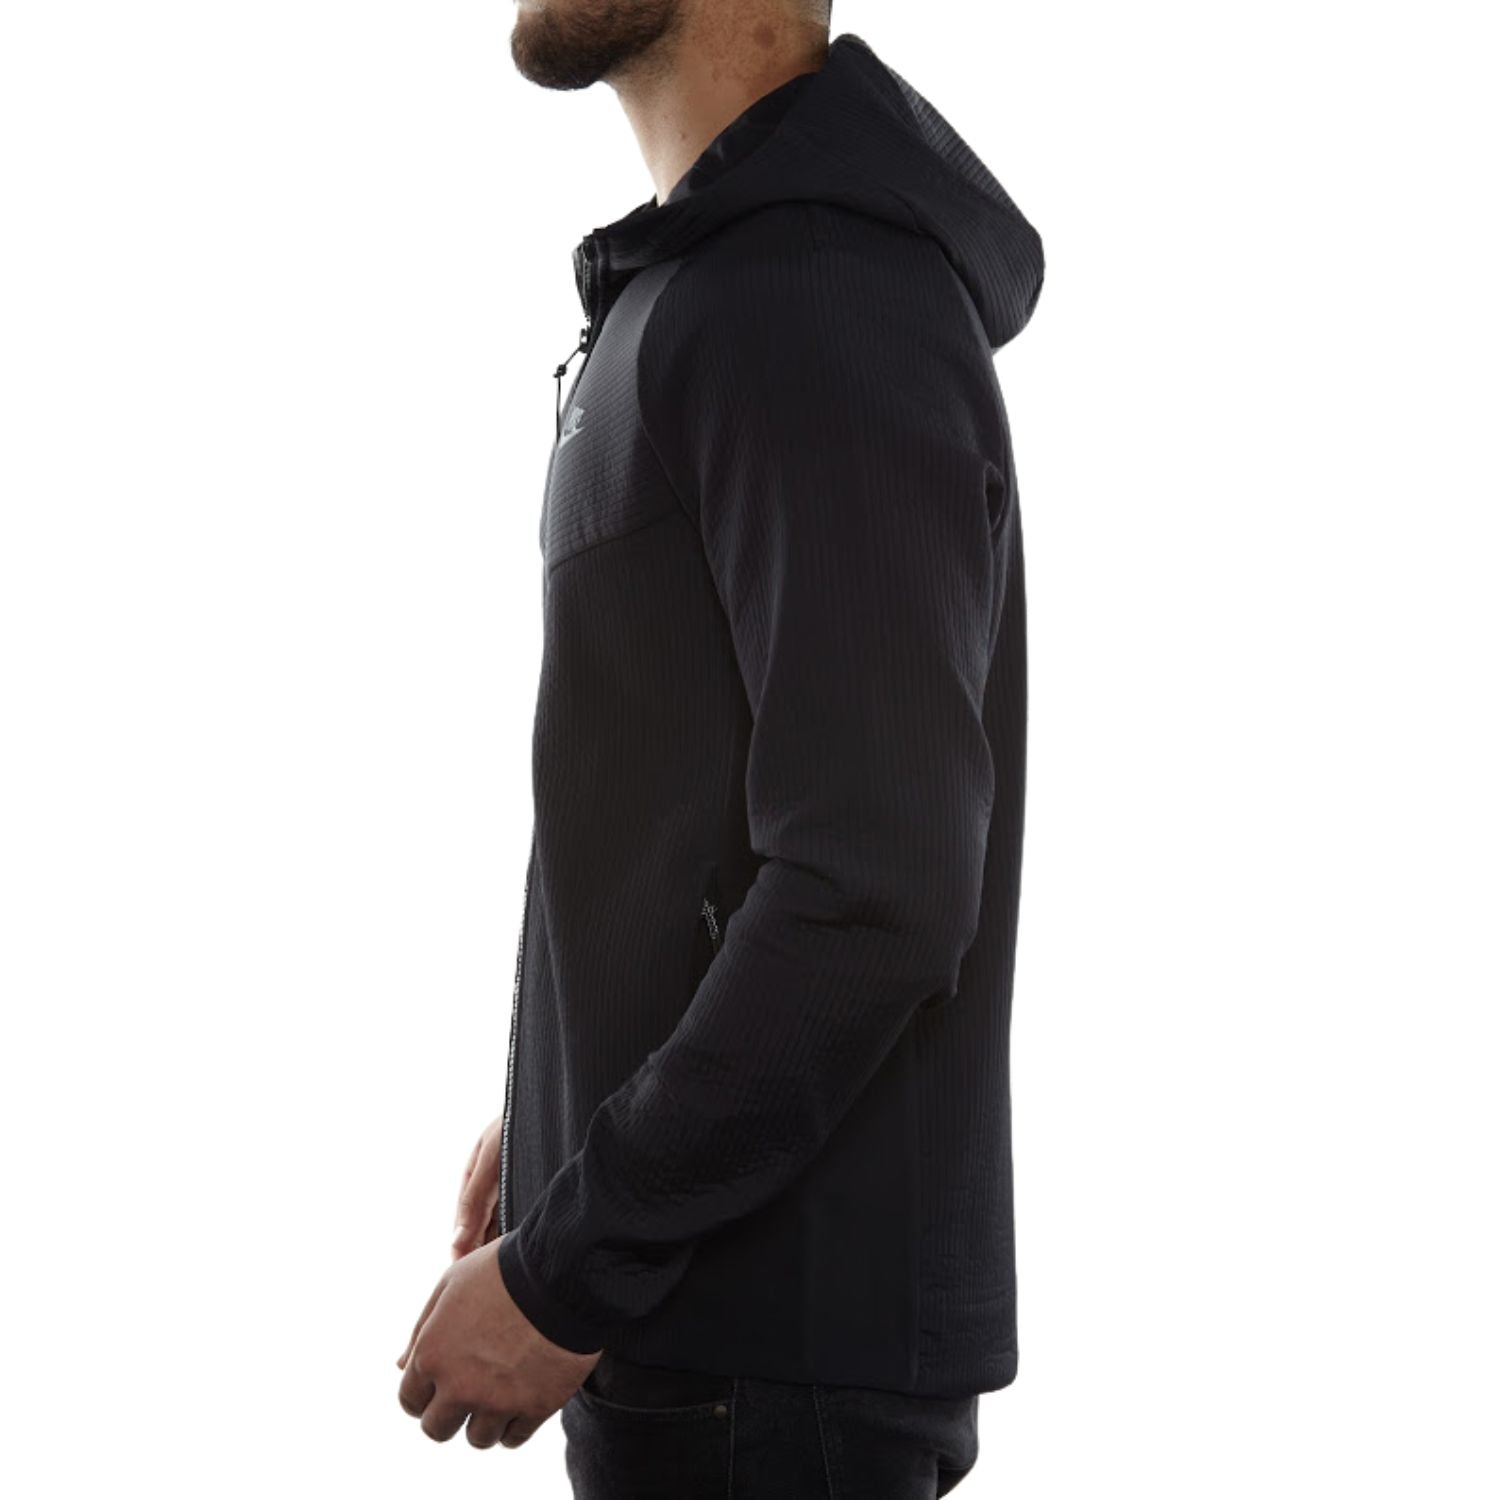 Nike Sportswear Tech Pack Woven Jacket Mens Style : 928551-010